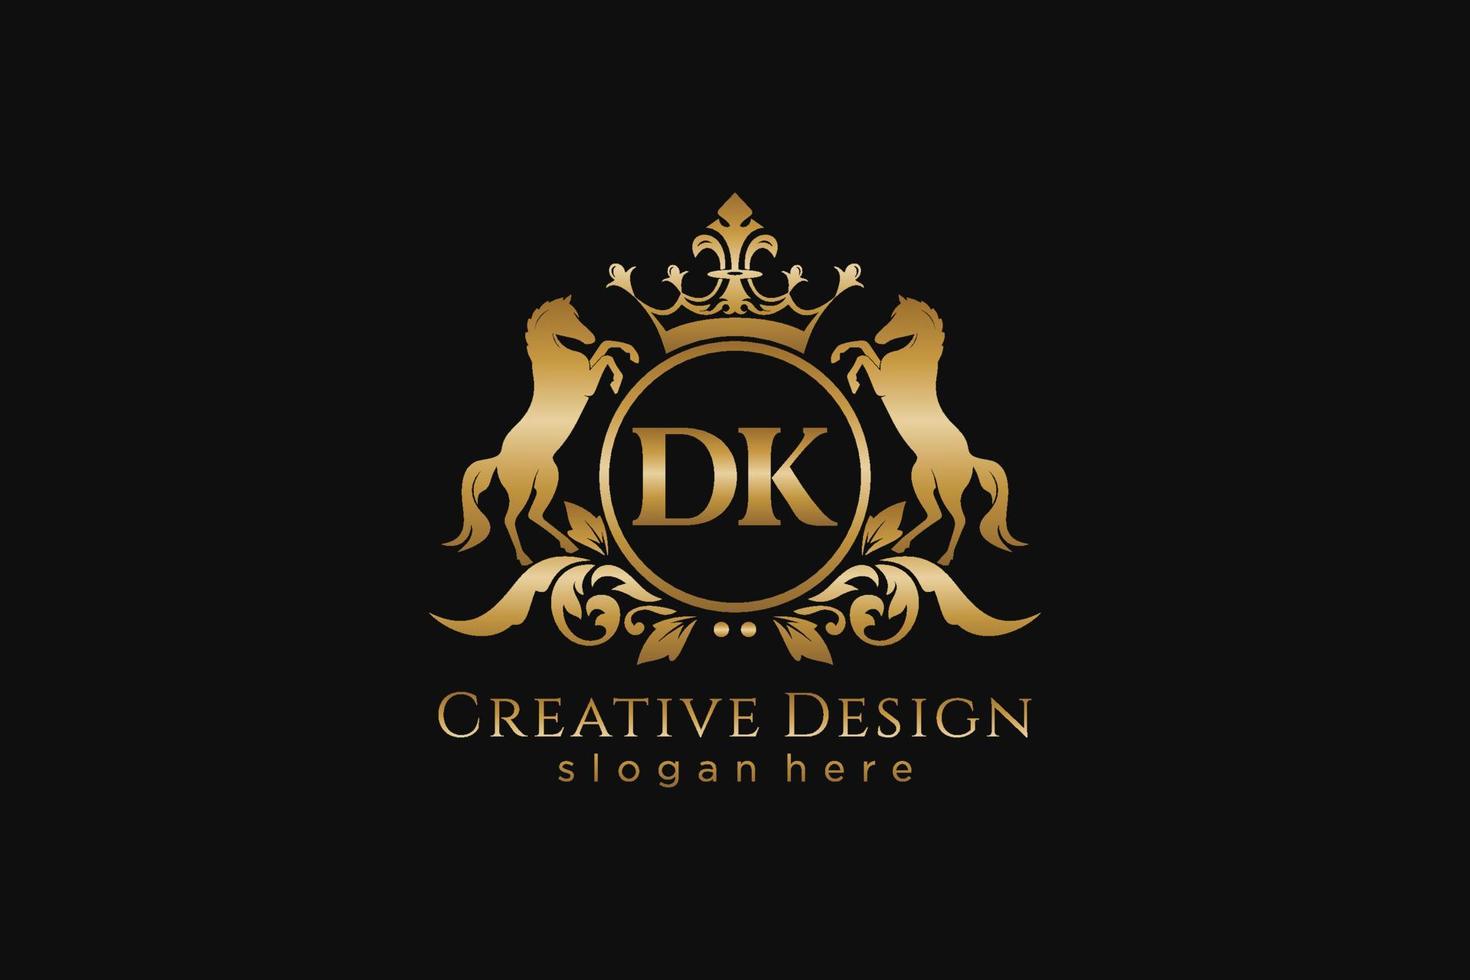 crista dourada retrô inicial dk com círculo e dois cavalos, modelo de crachá com pergaminhos e coroa real - perfeito para projetos de marca luxuosos vetor